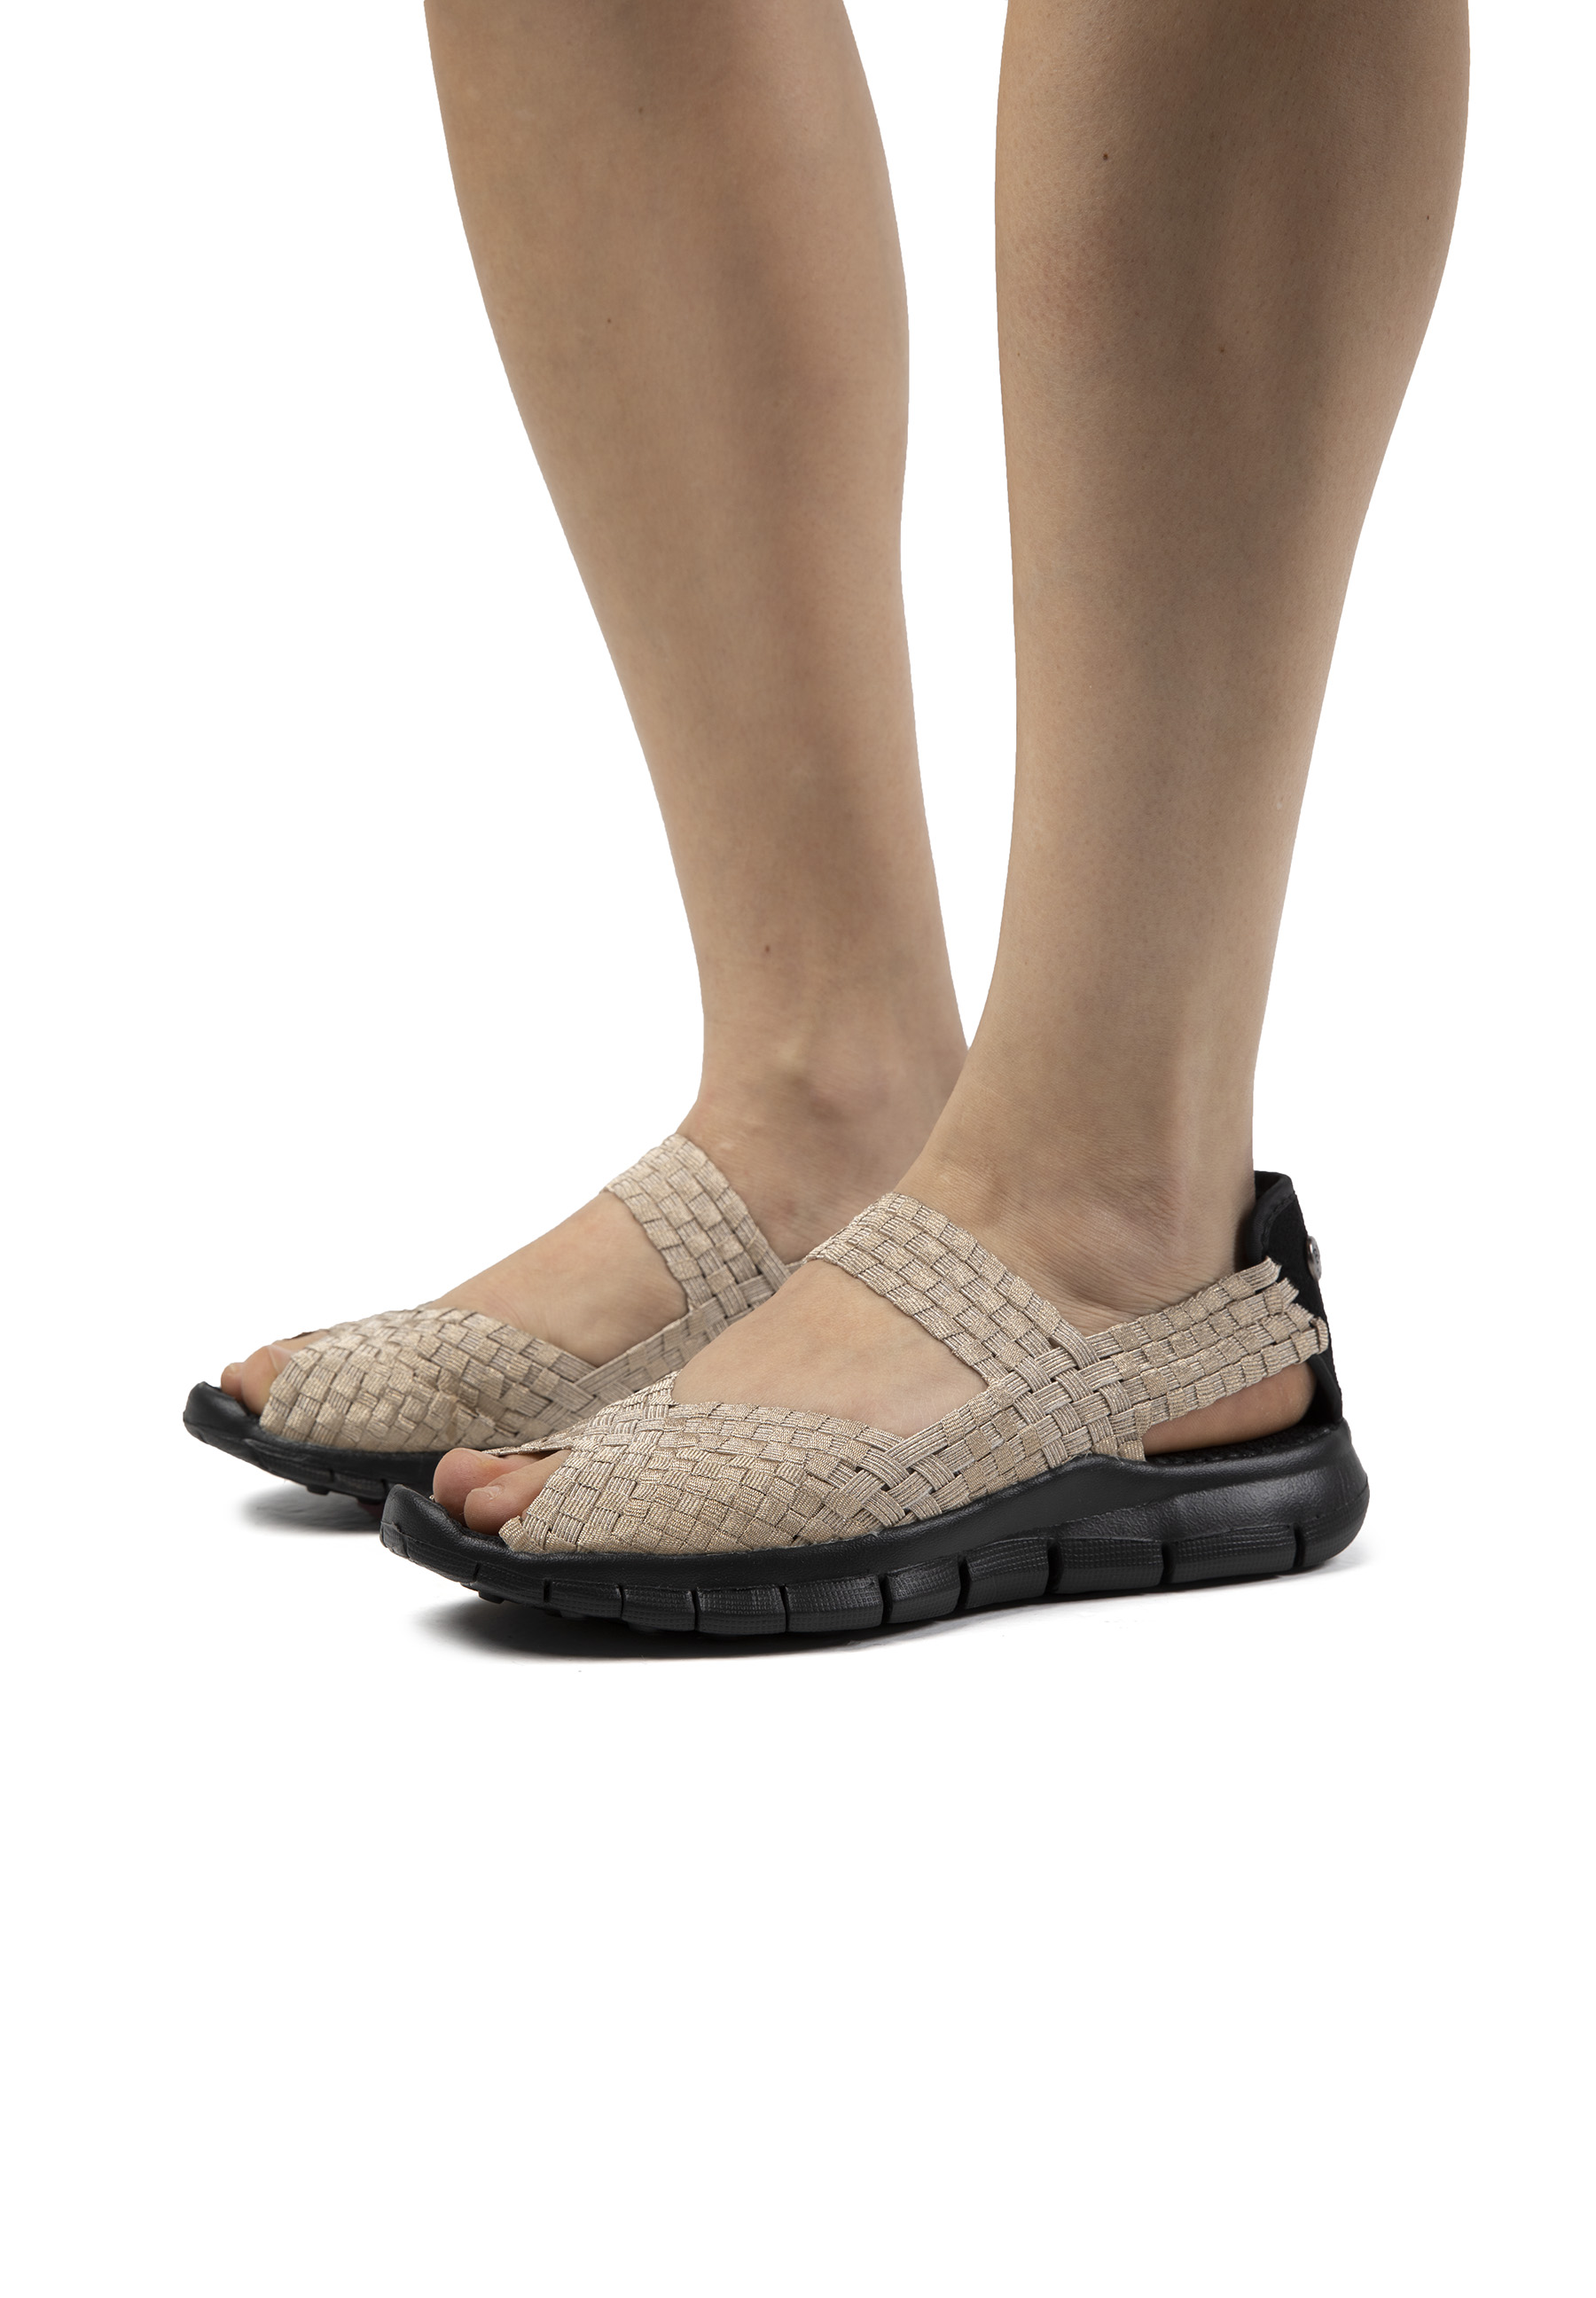 Zapatillas Deportivas De Mujer Bernie Mev De Textil En Oro (talla 35 A 42)